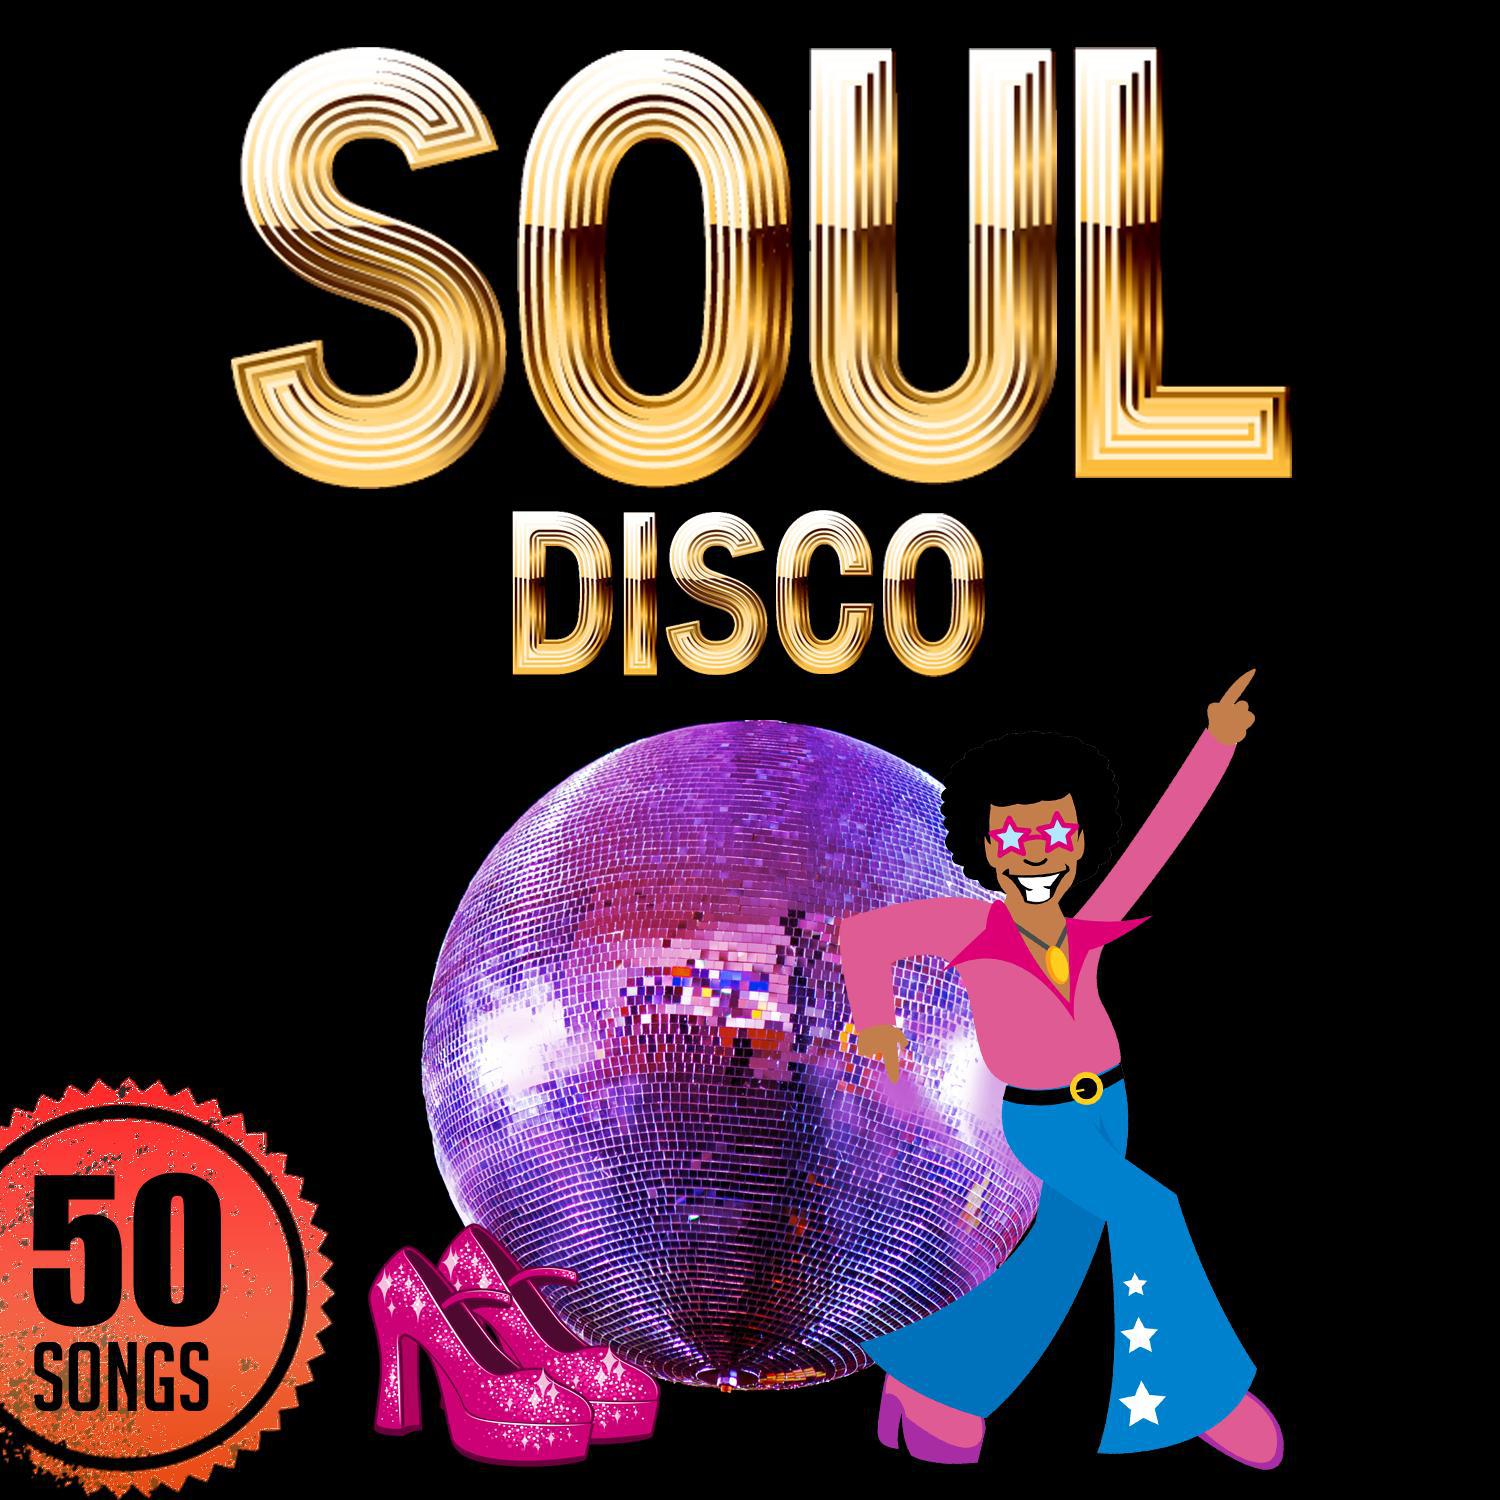 Soul: Disco